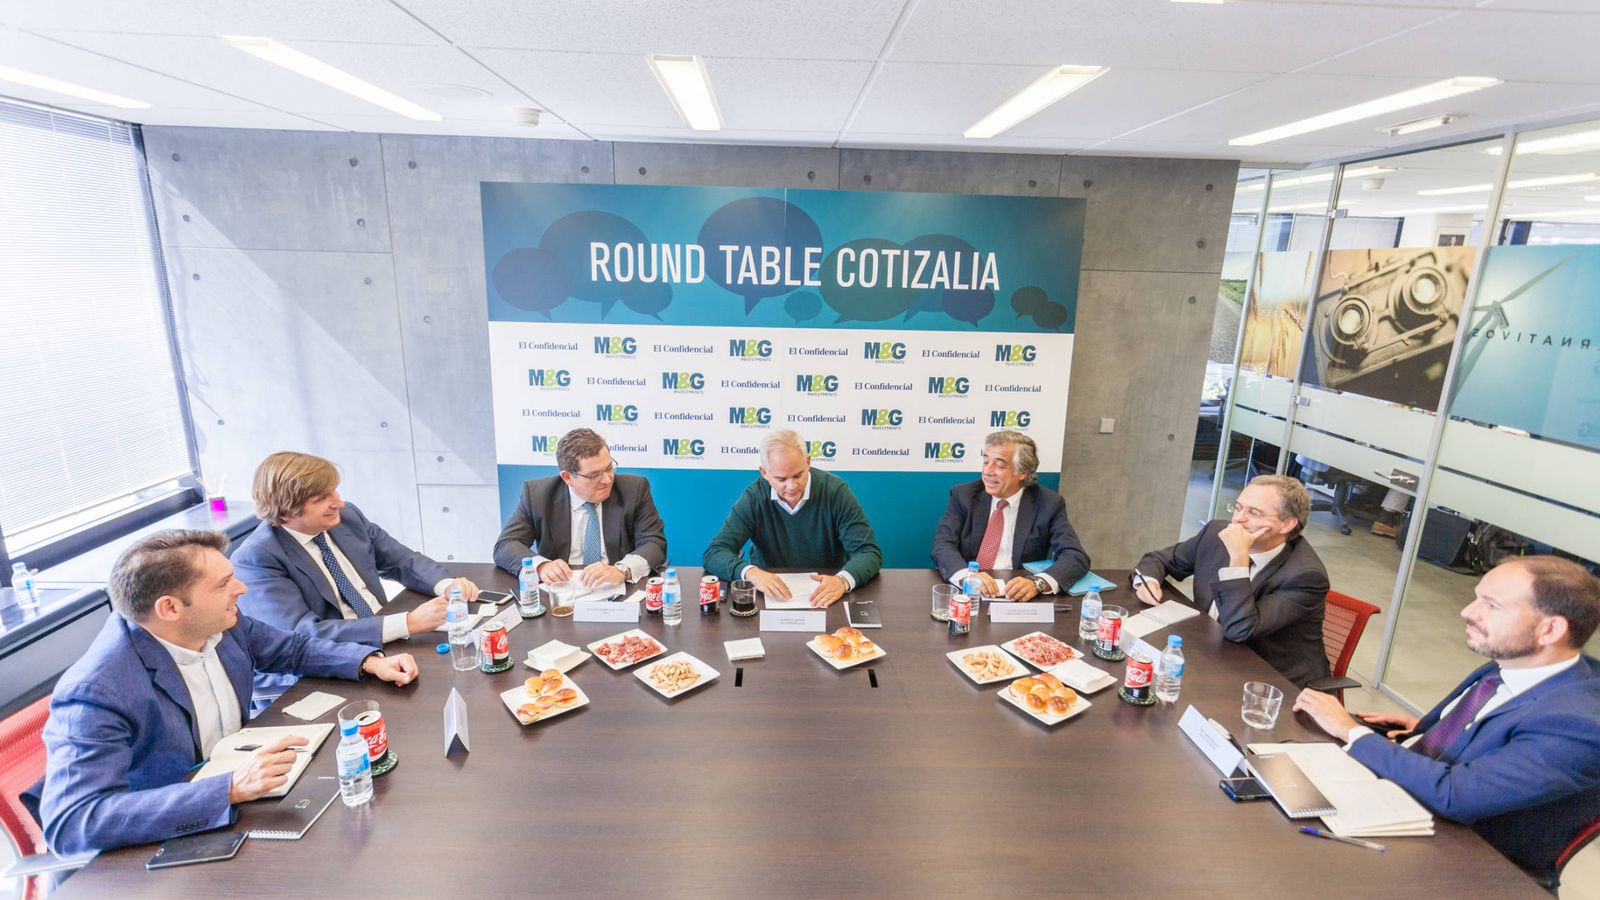 Foto: Imagen de los participantes de la XIV Round Table de Cotizalia con M&G Investments.